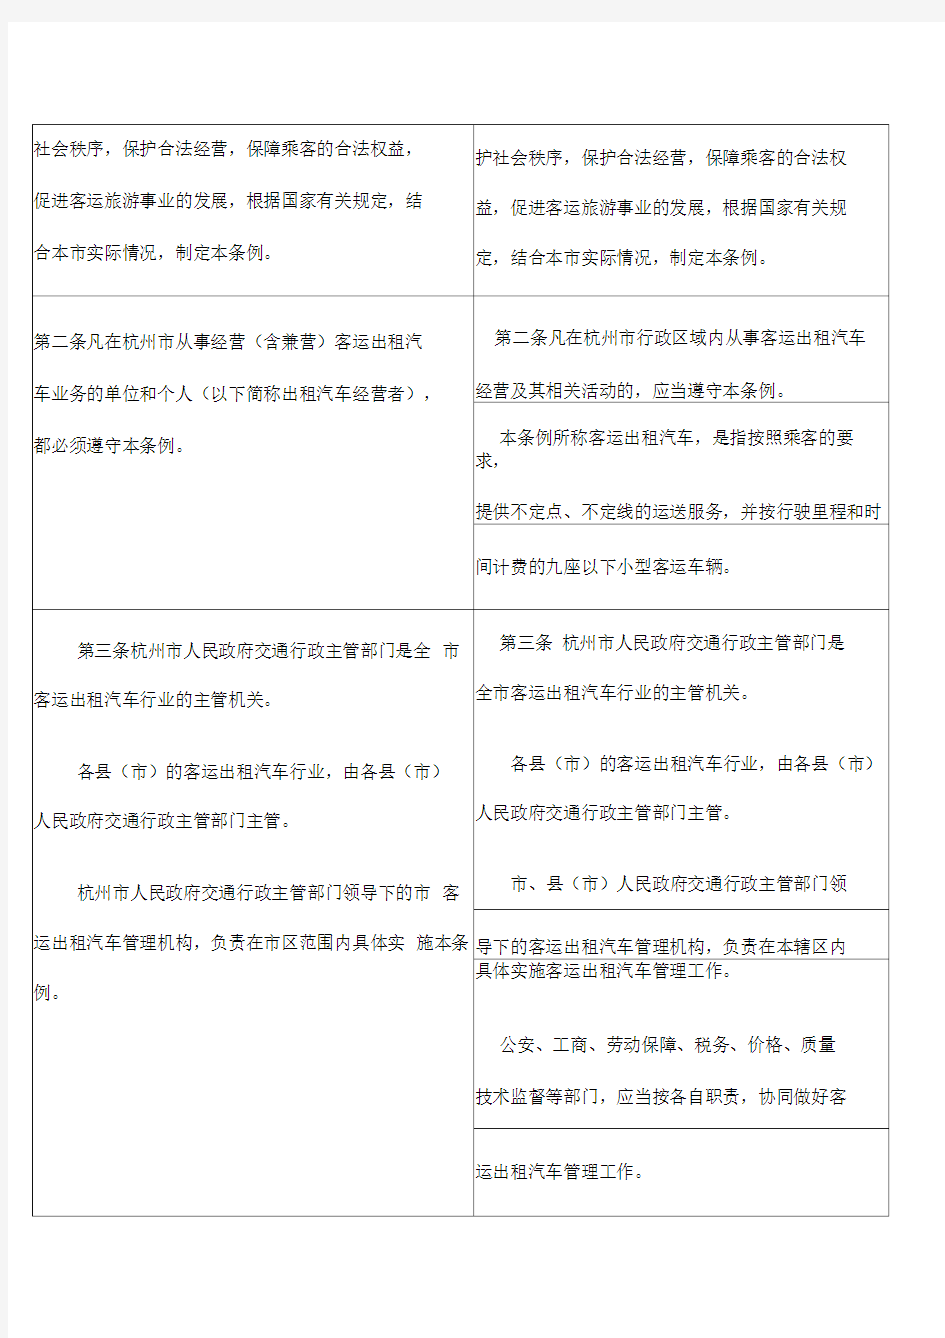 杭州市客运出租汽车管理条例修改对照表